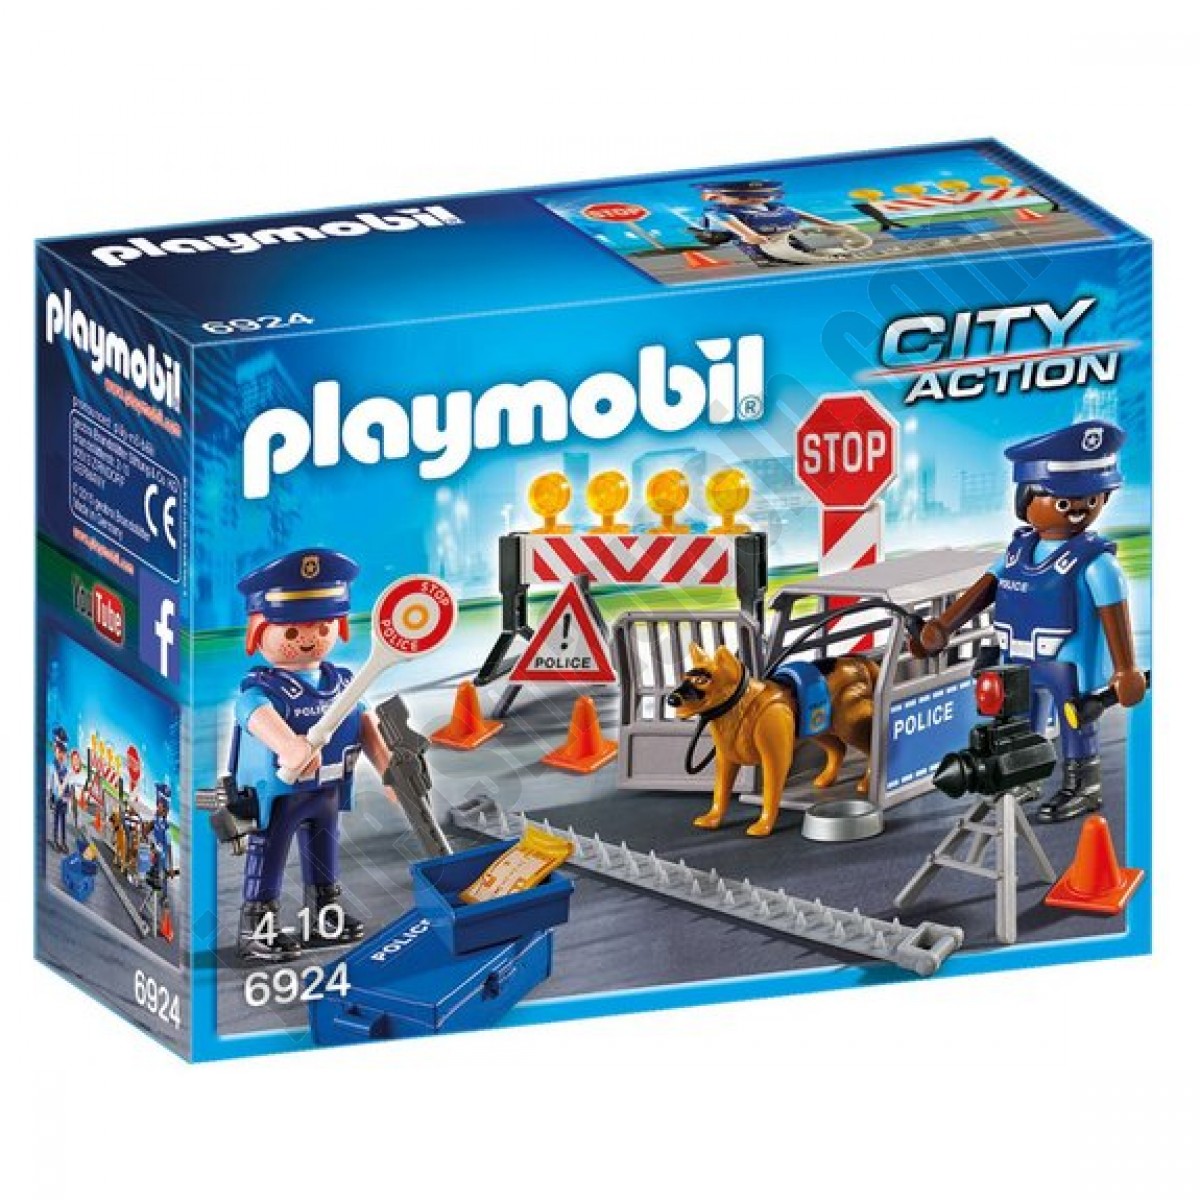 Barrage de police Playmobil City Action 6924 ◆◆◆ Nouveau - Barrage de police Playmobil City Action 6924 ◆◆◆ Nouveau